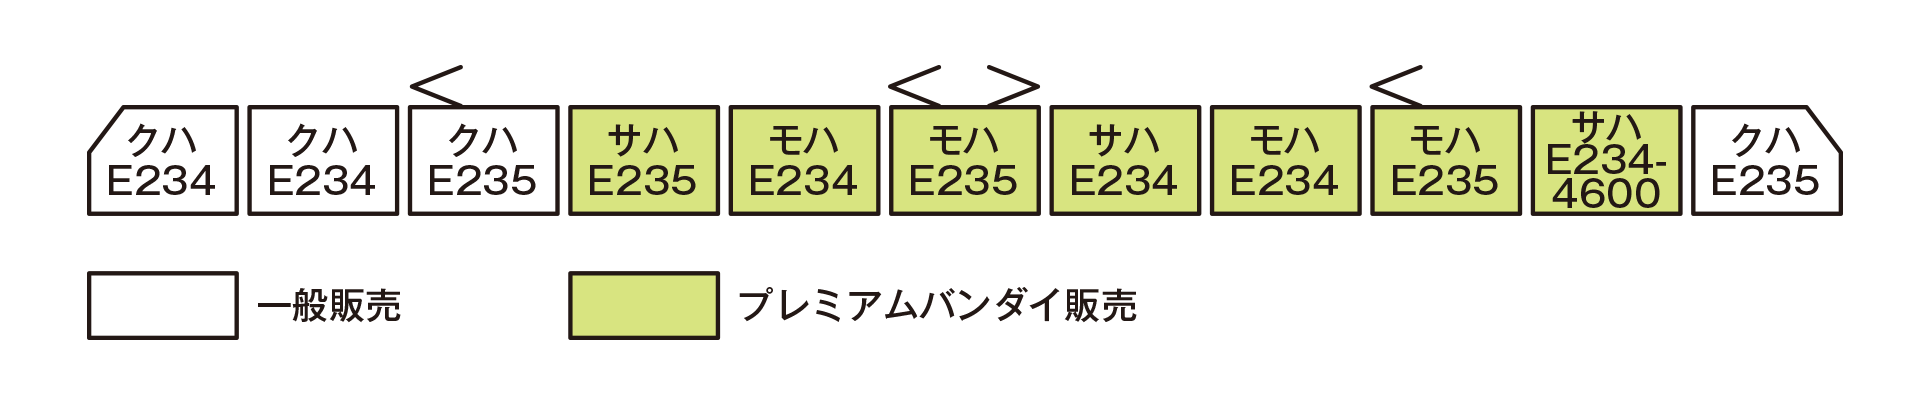 E235系編成図